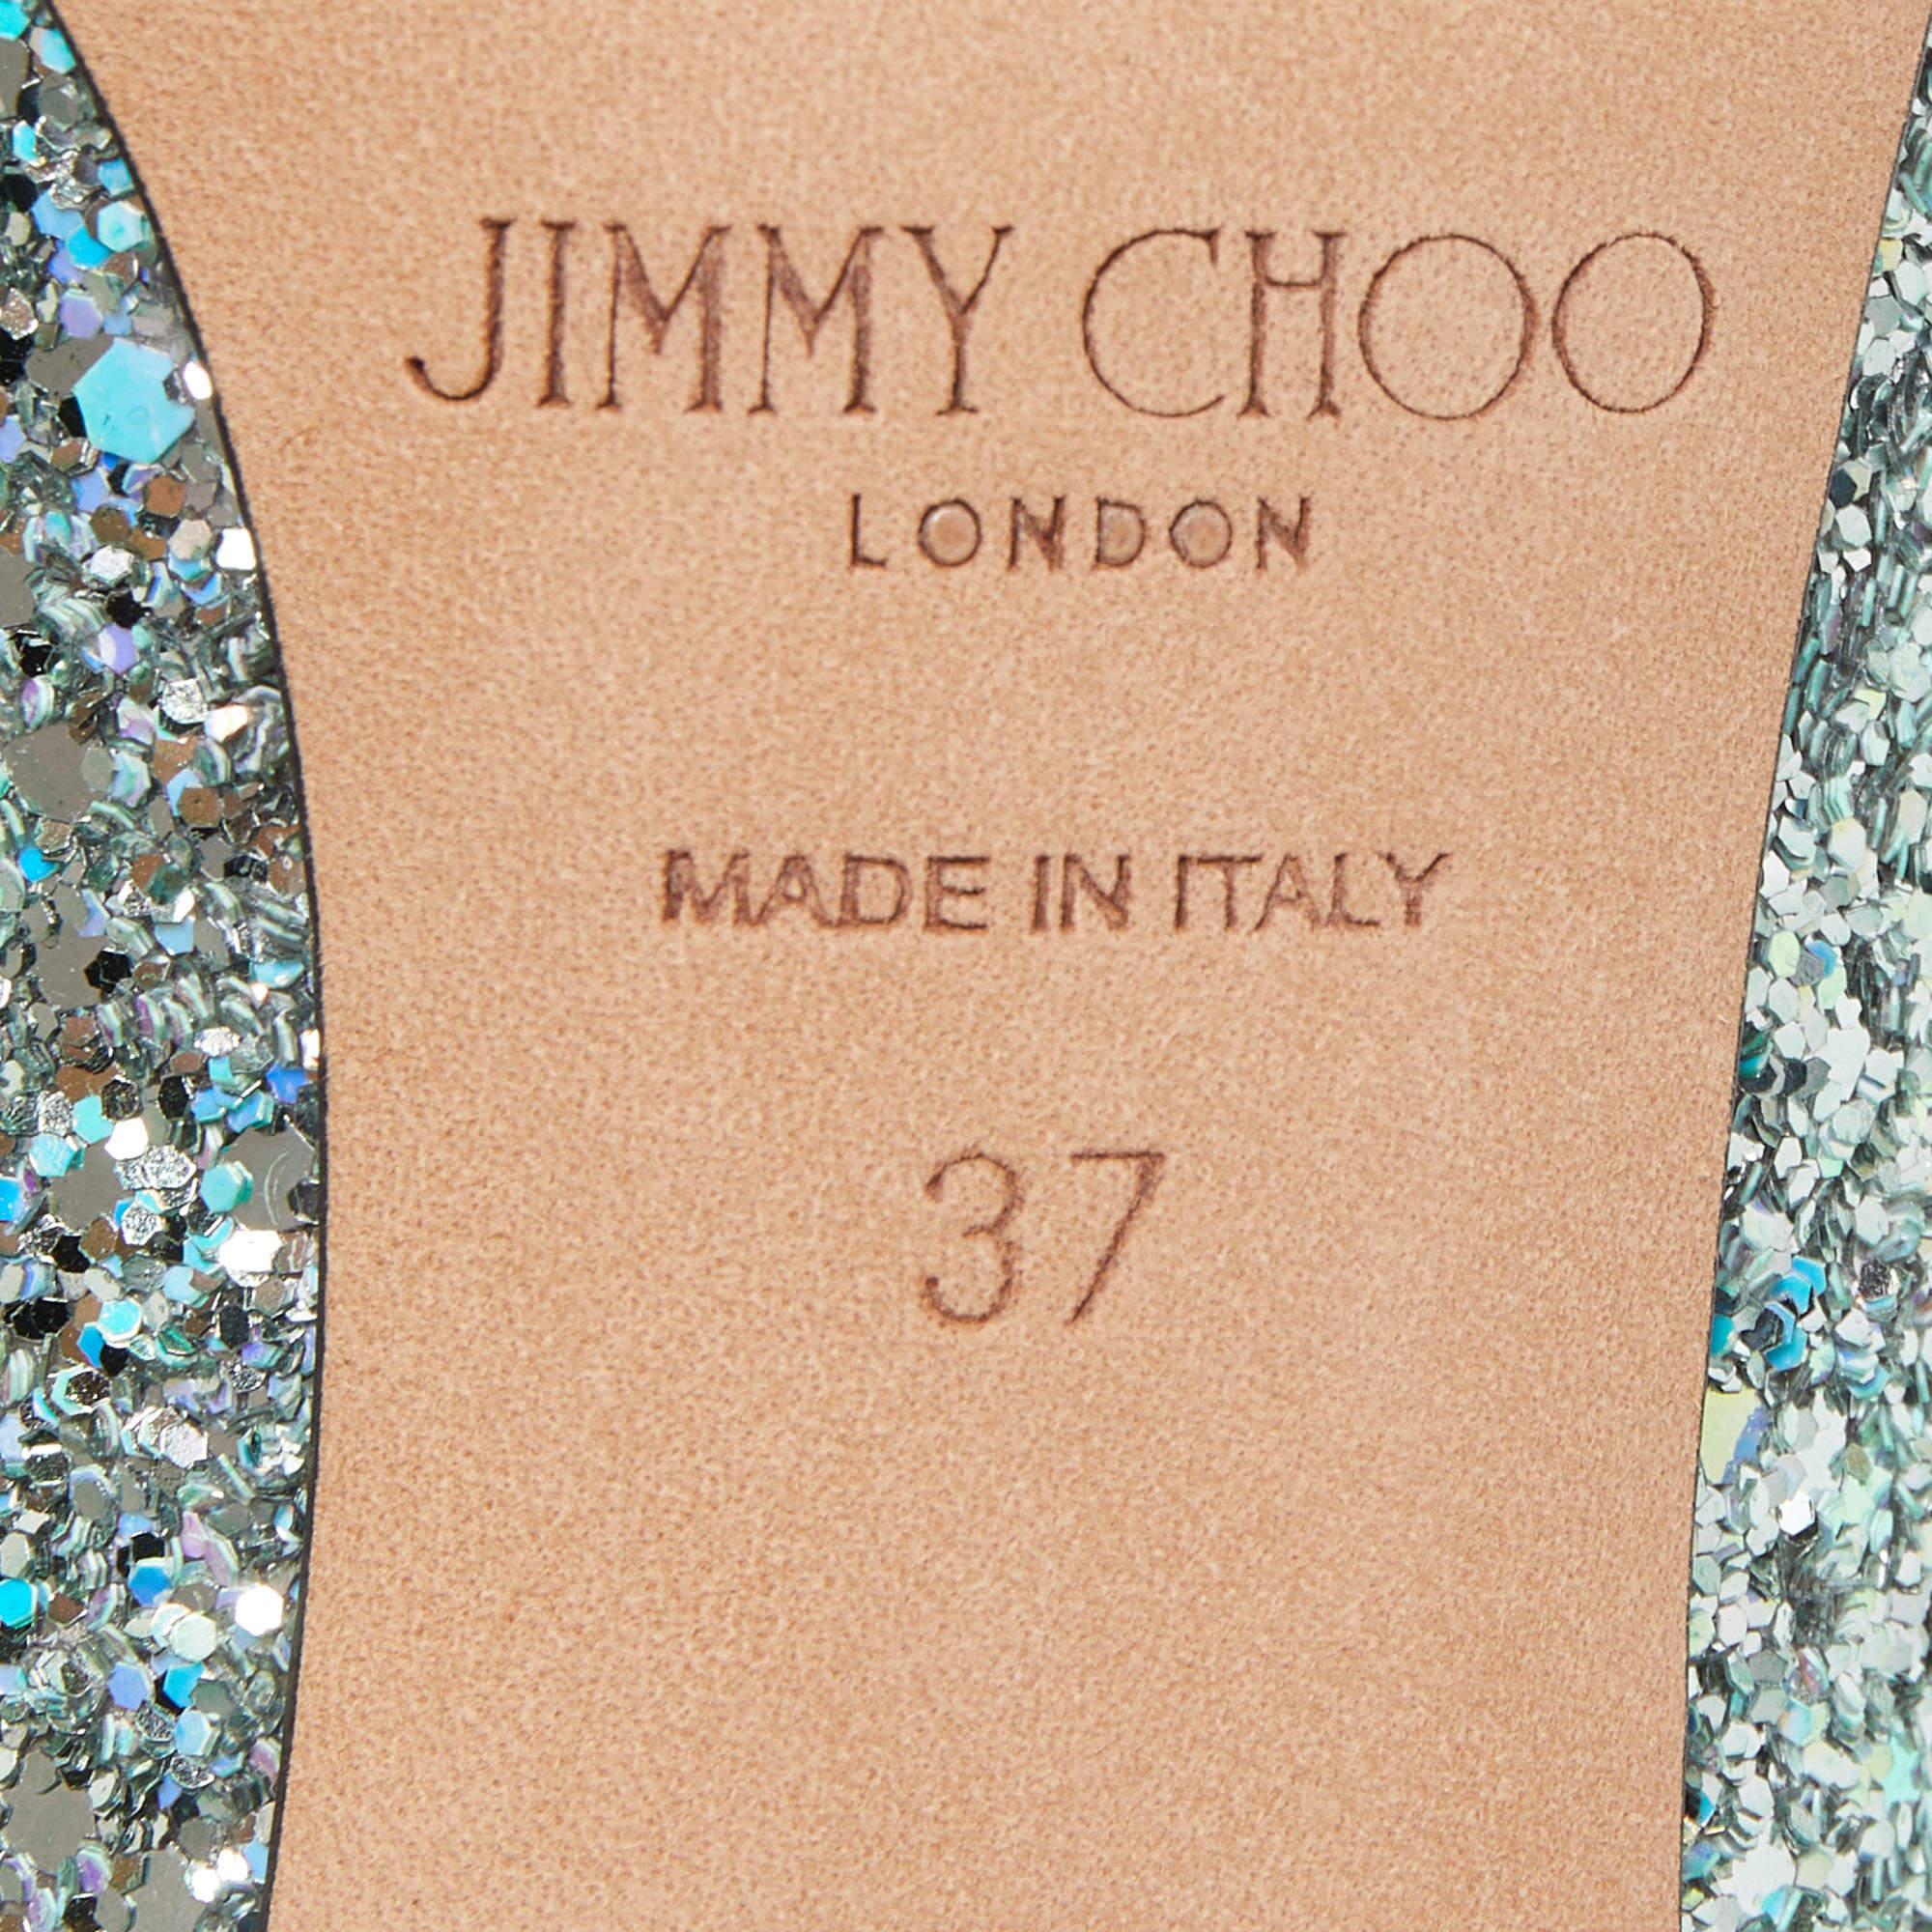 Jimmy Choo Metallic Mint Glitter Romy Pumps Size 37 3